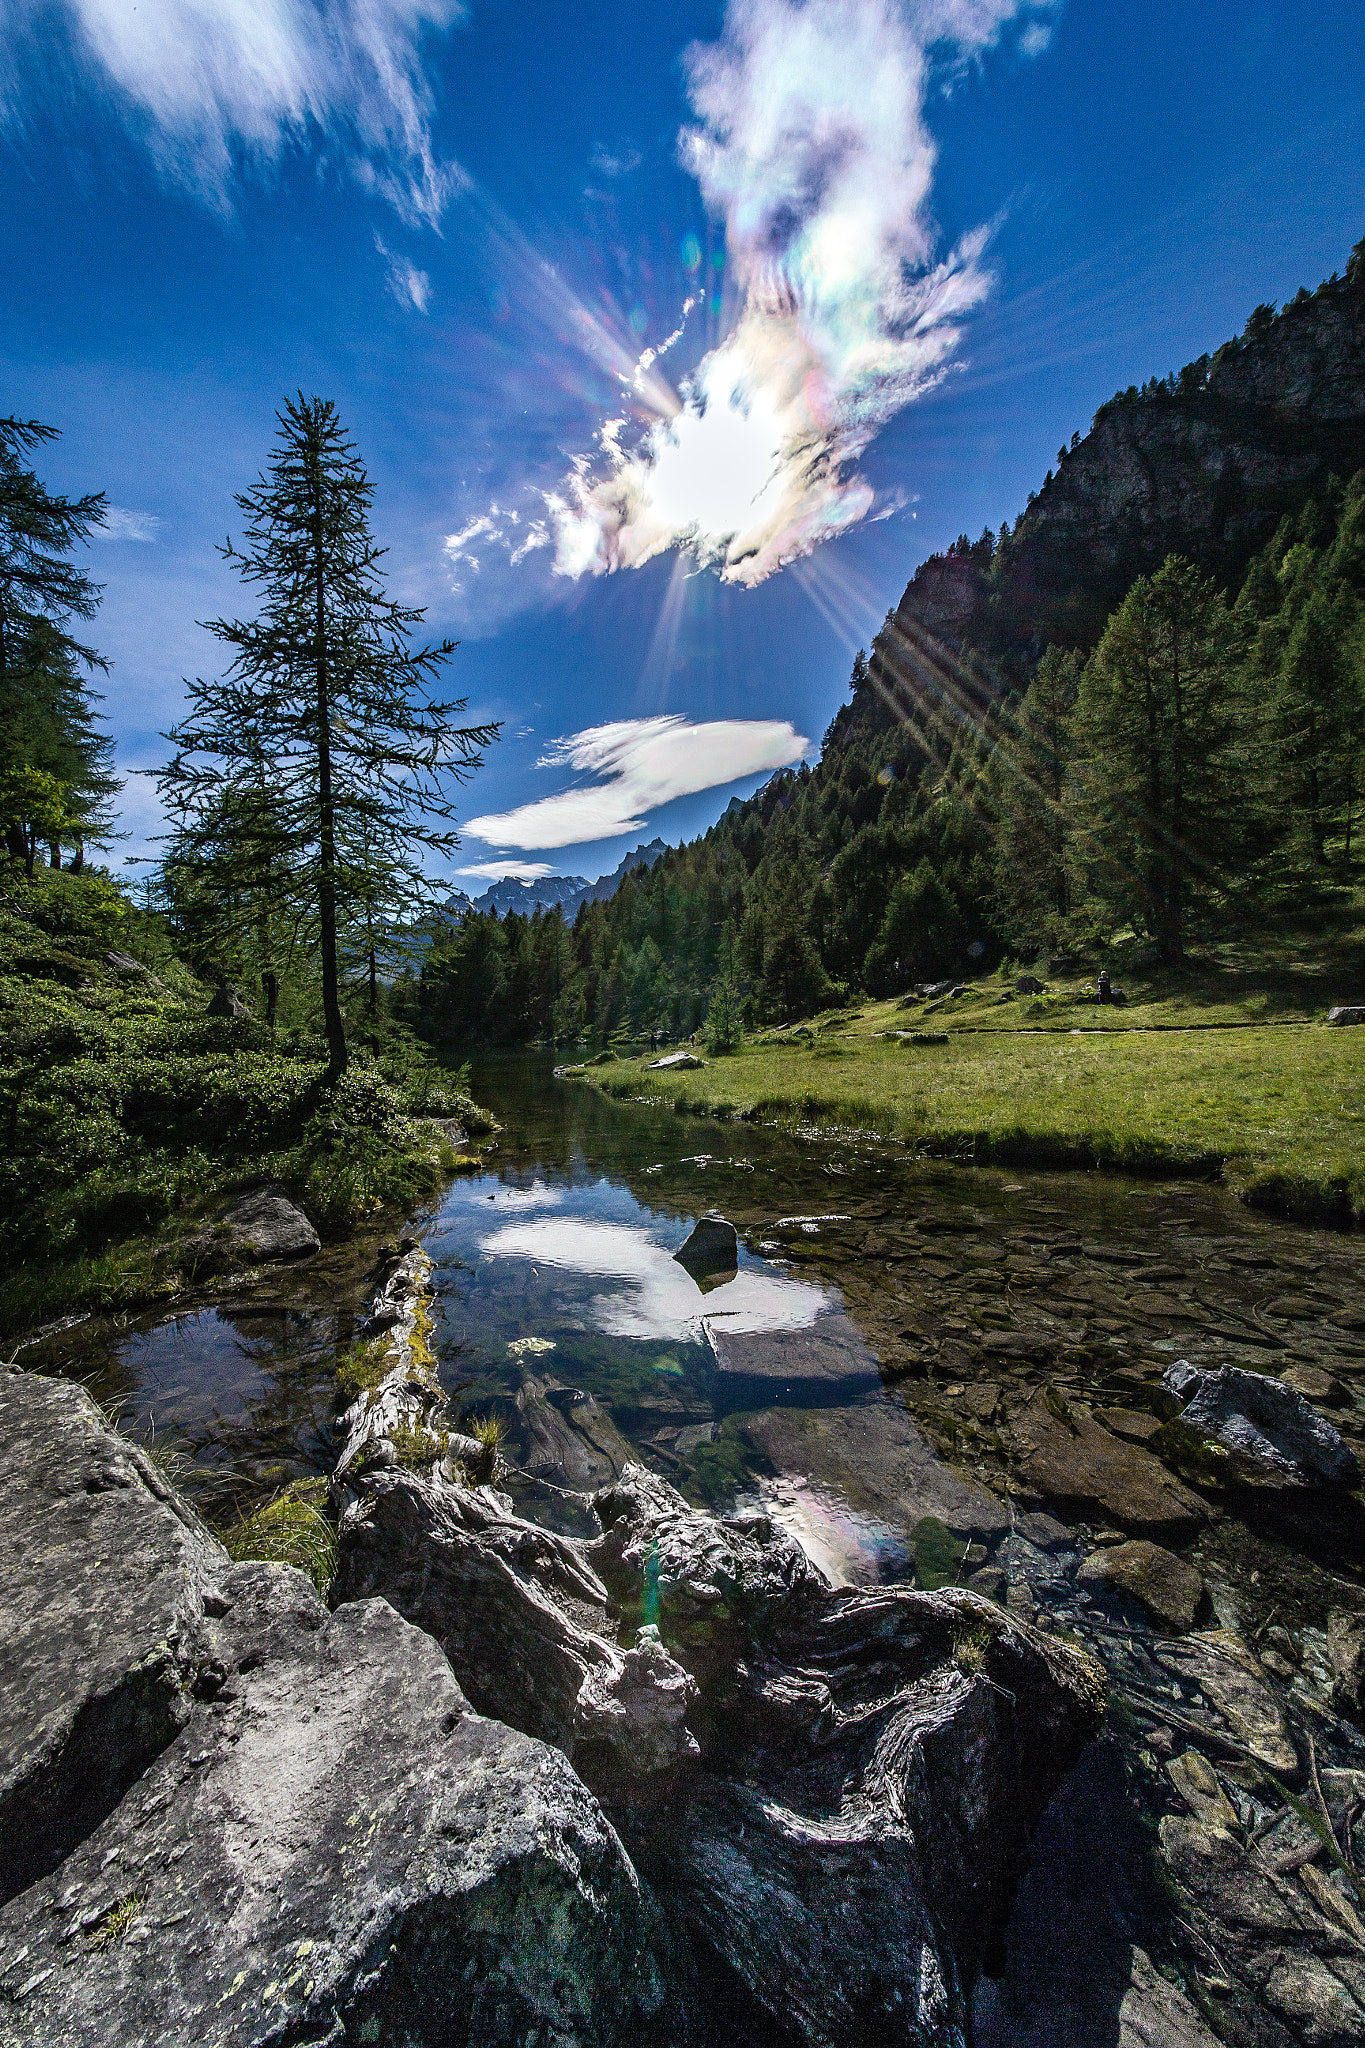 Canon EOS-1D X + Sigma 12-24mm F4.5-5.6 II DG HSM sample photo. Alpe devero presso lago delle streghe photography